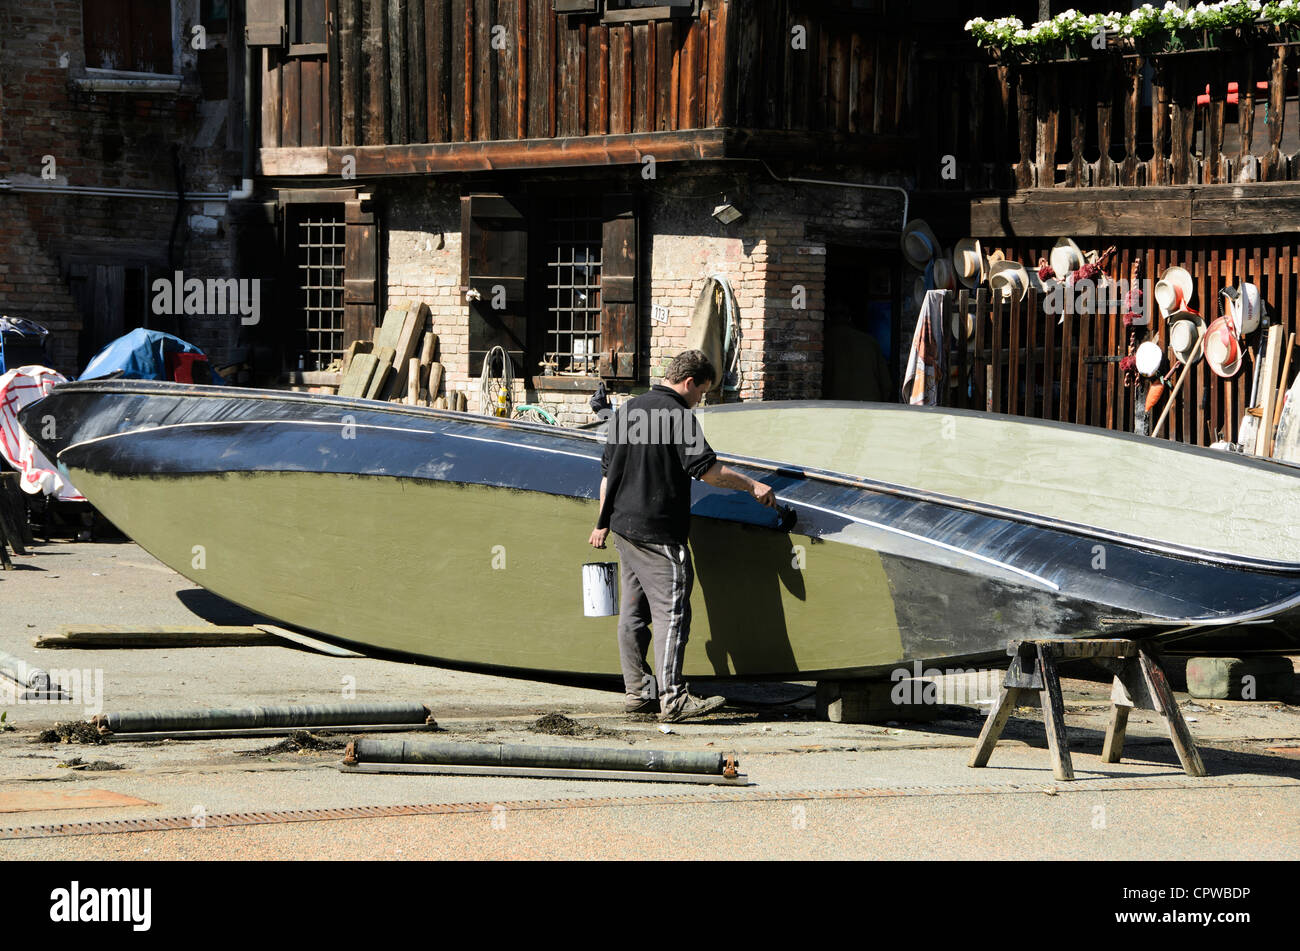 Man painting une gondole - 'Squero di San Trovaso' atelier gondole - sestiere Dorsoduro, Venise - Italie Banque D'Images